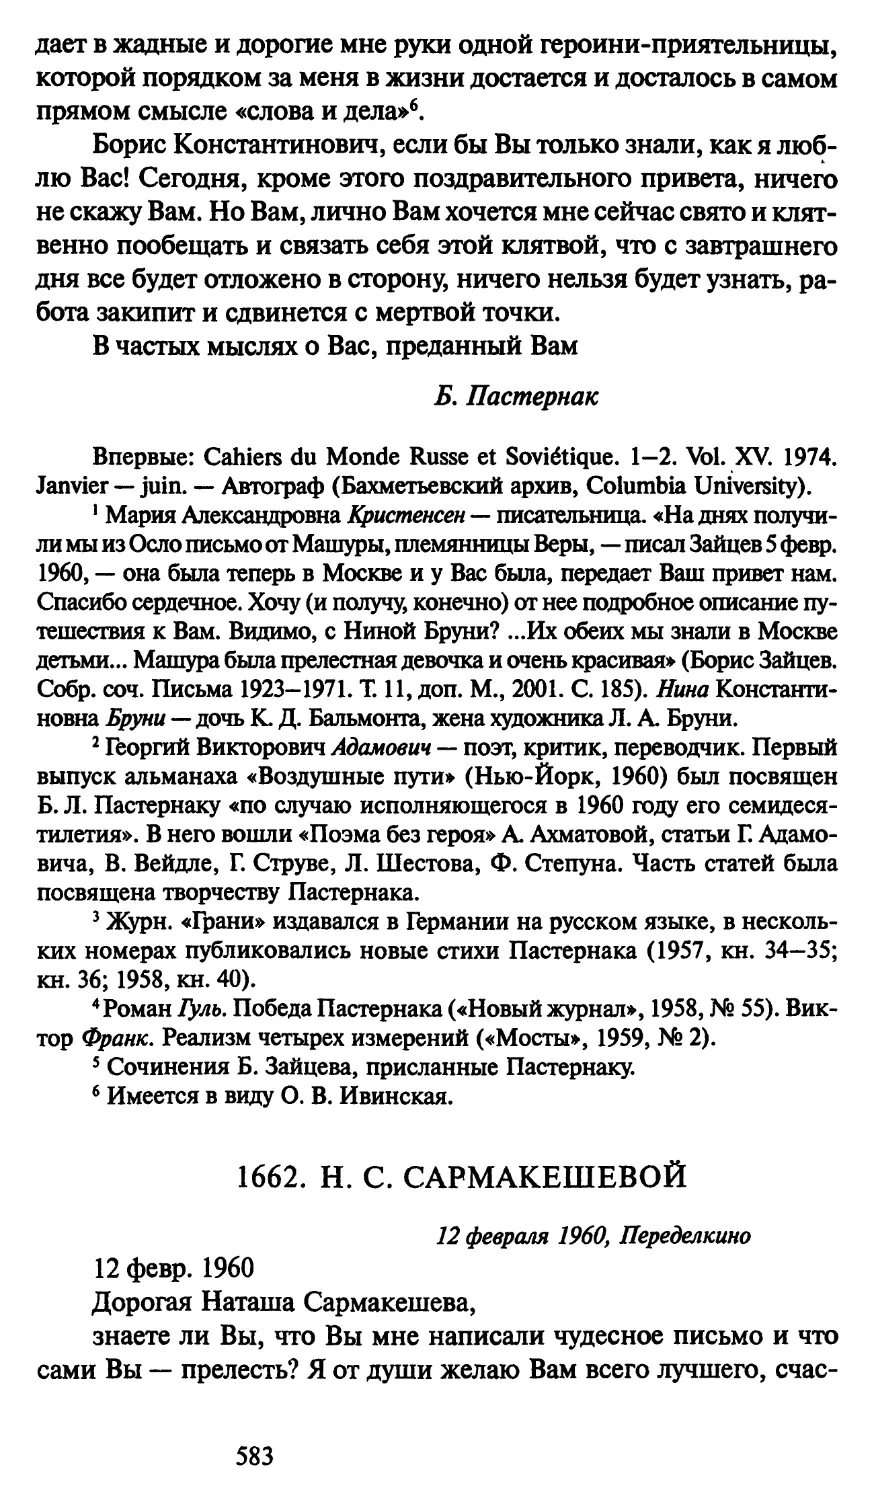 1662. Н. С. Сармакешевой 12 февраля 1960